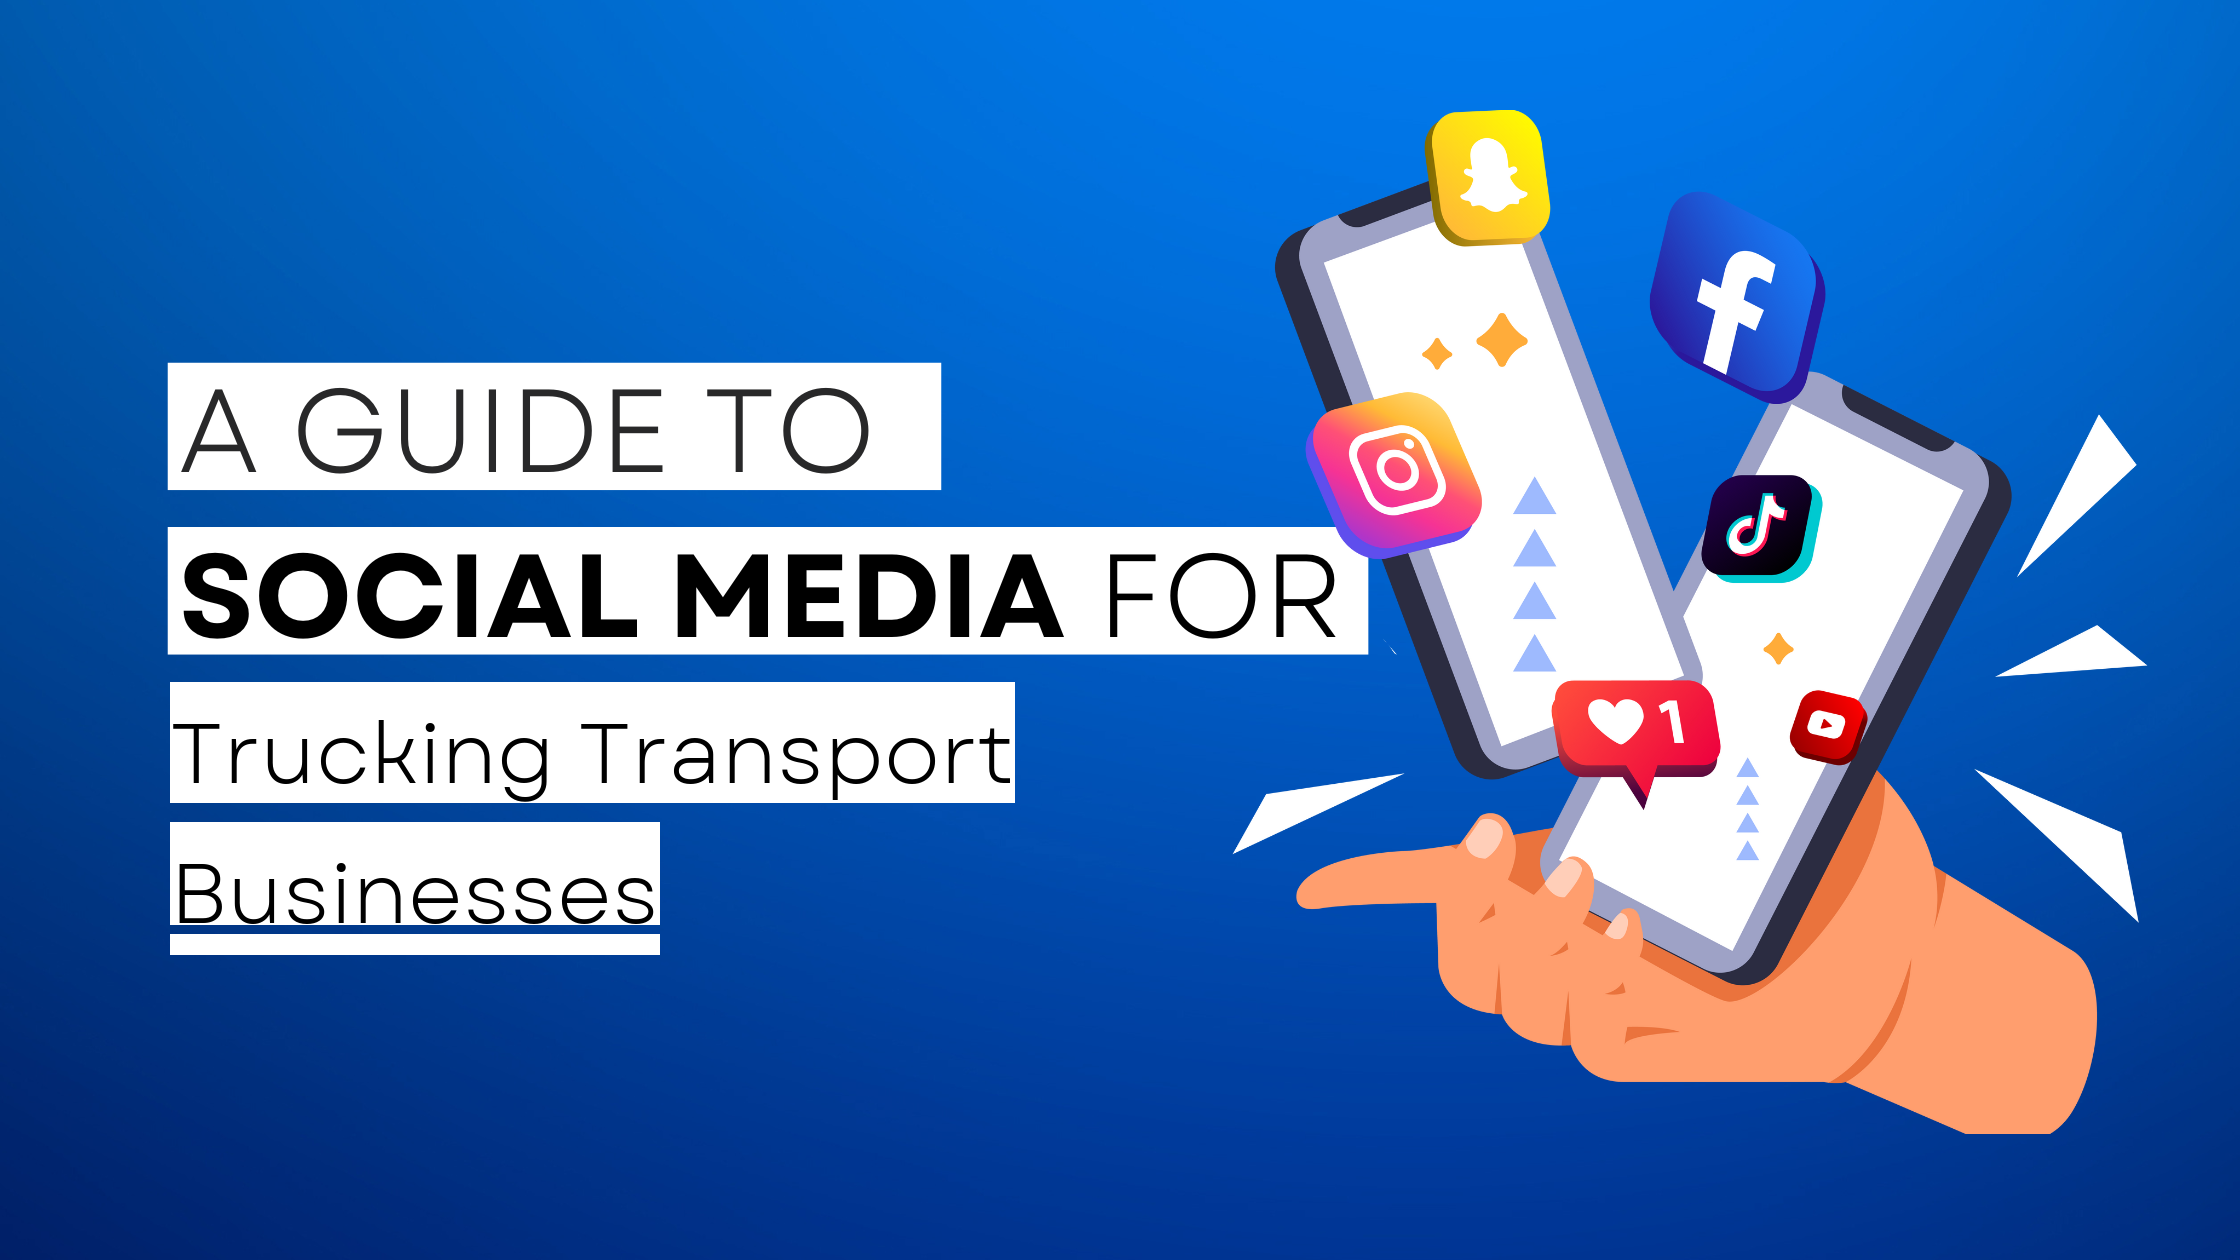 How to start Trucking Transport on social media